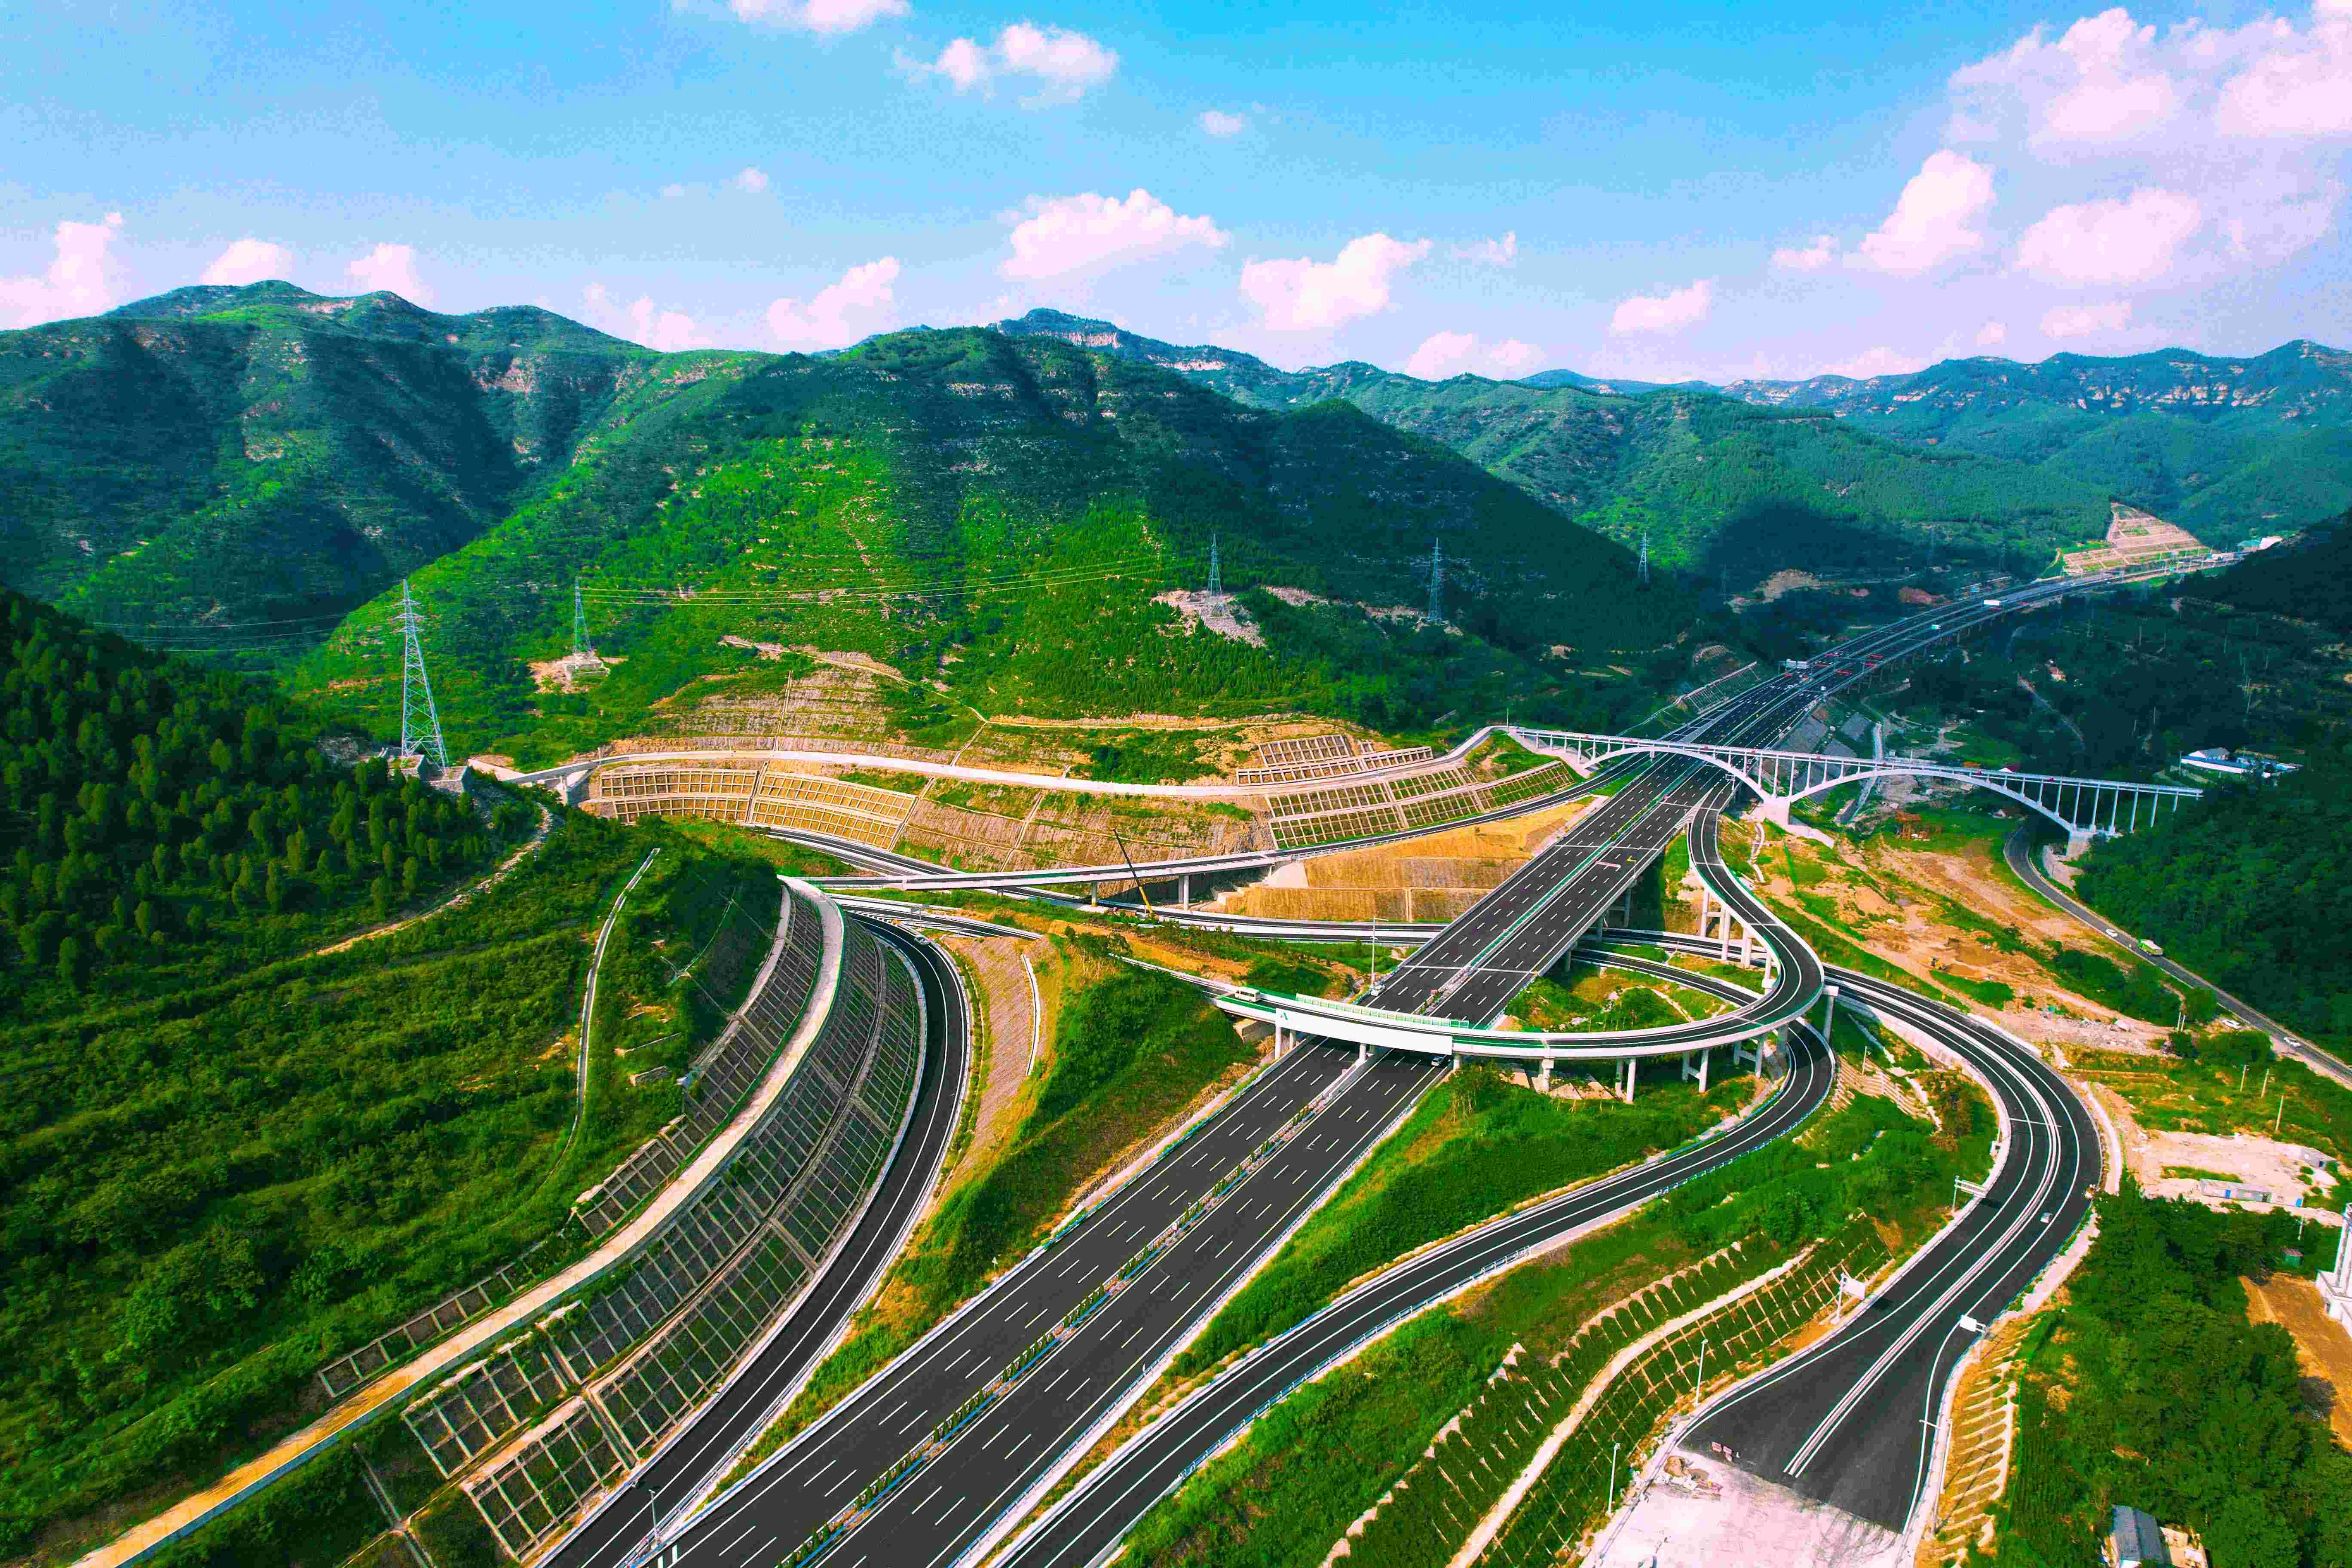 山东高速集团投资建设的济南至潍坊高速公路济南绕城东二环至长深段